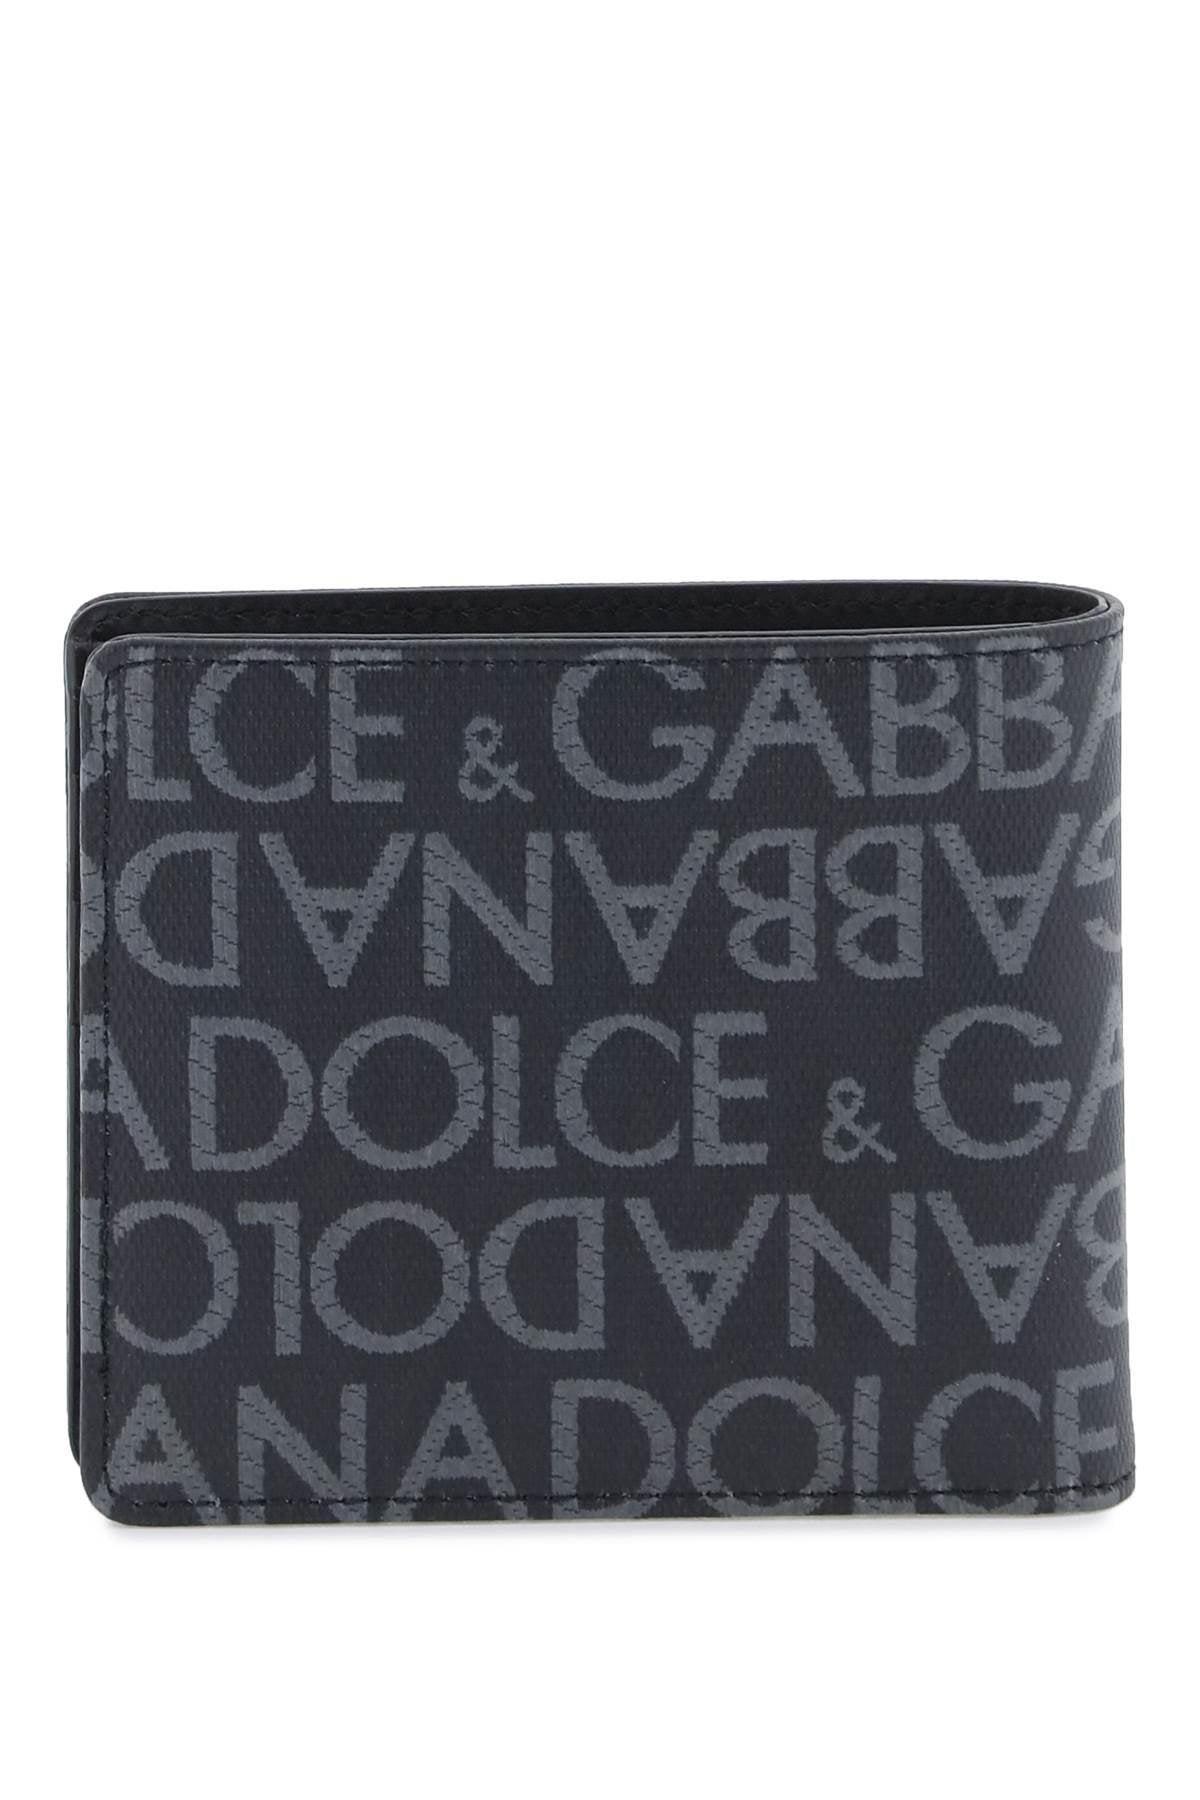 Dolce & Gabbana Dolce & gabbana jacquard logo wallet